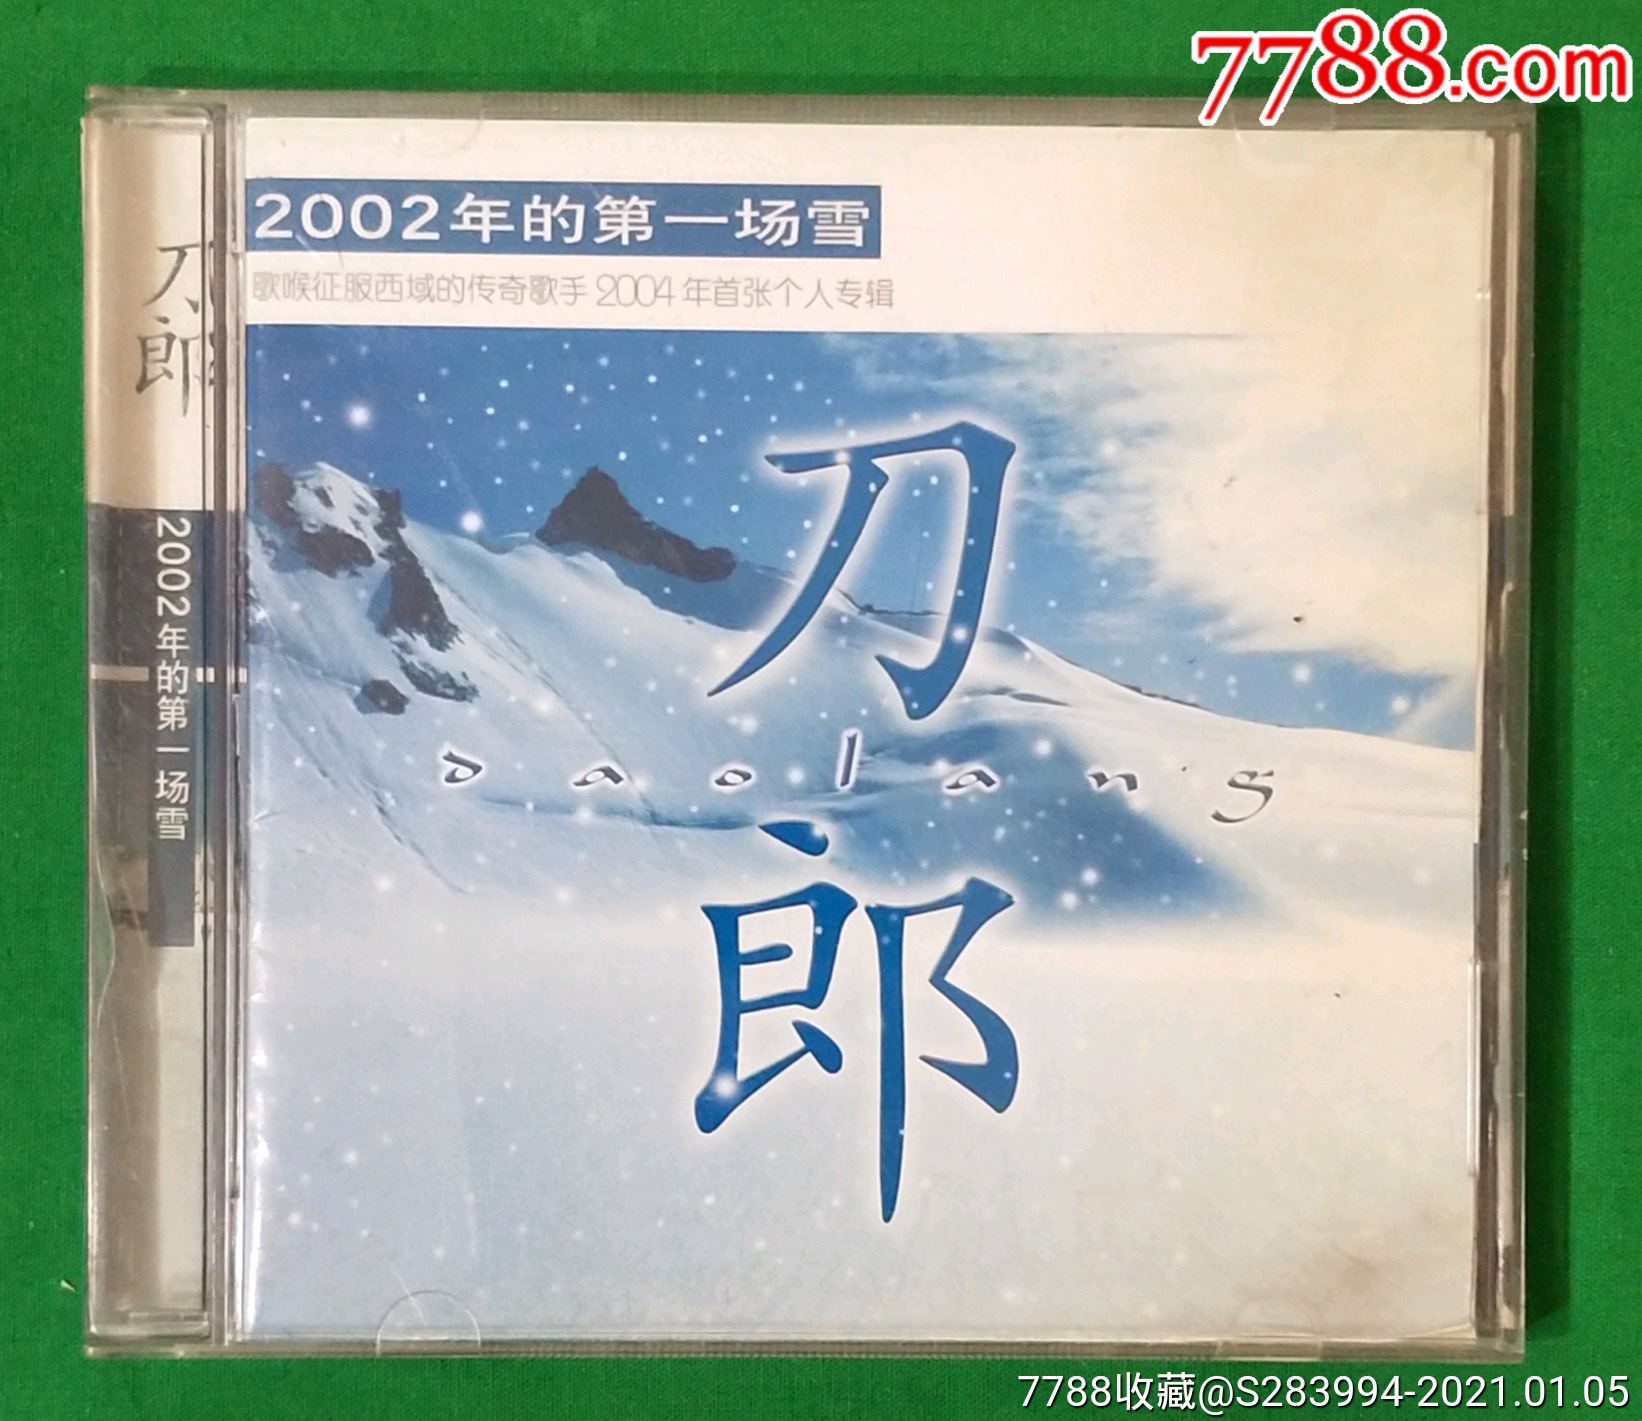 刀郎2002年的第一场雪cd-价格:219元-au35330201-音乐CD -加价-7788收藏__收藏热线